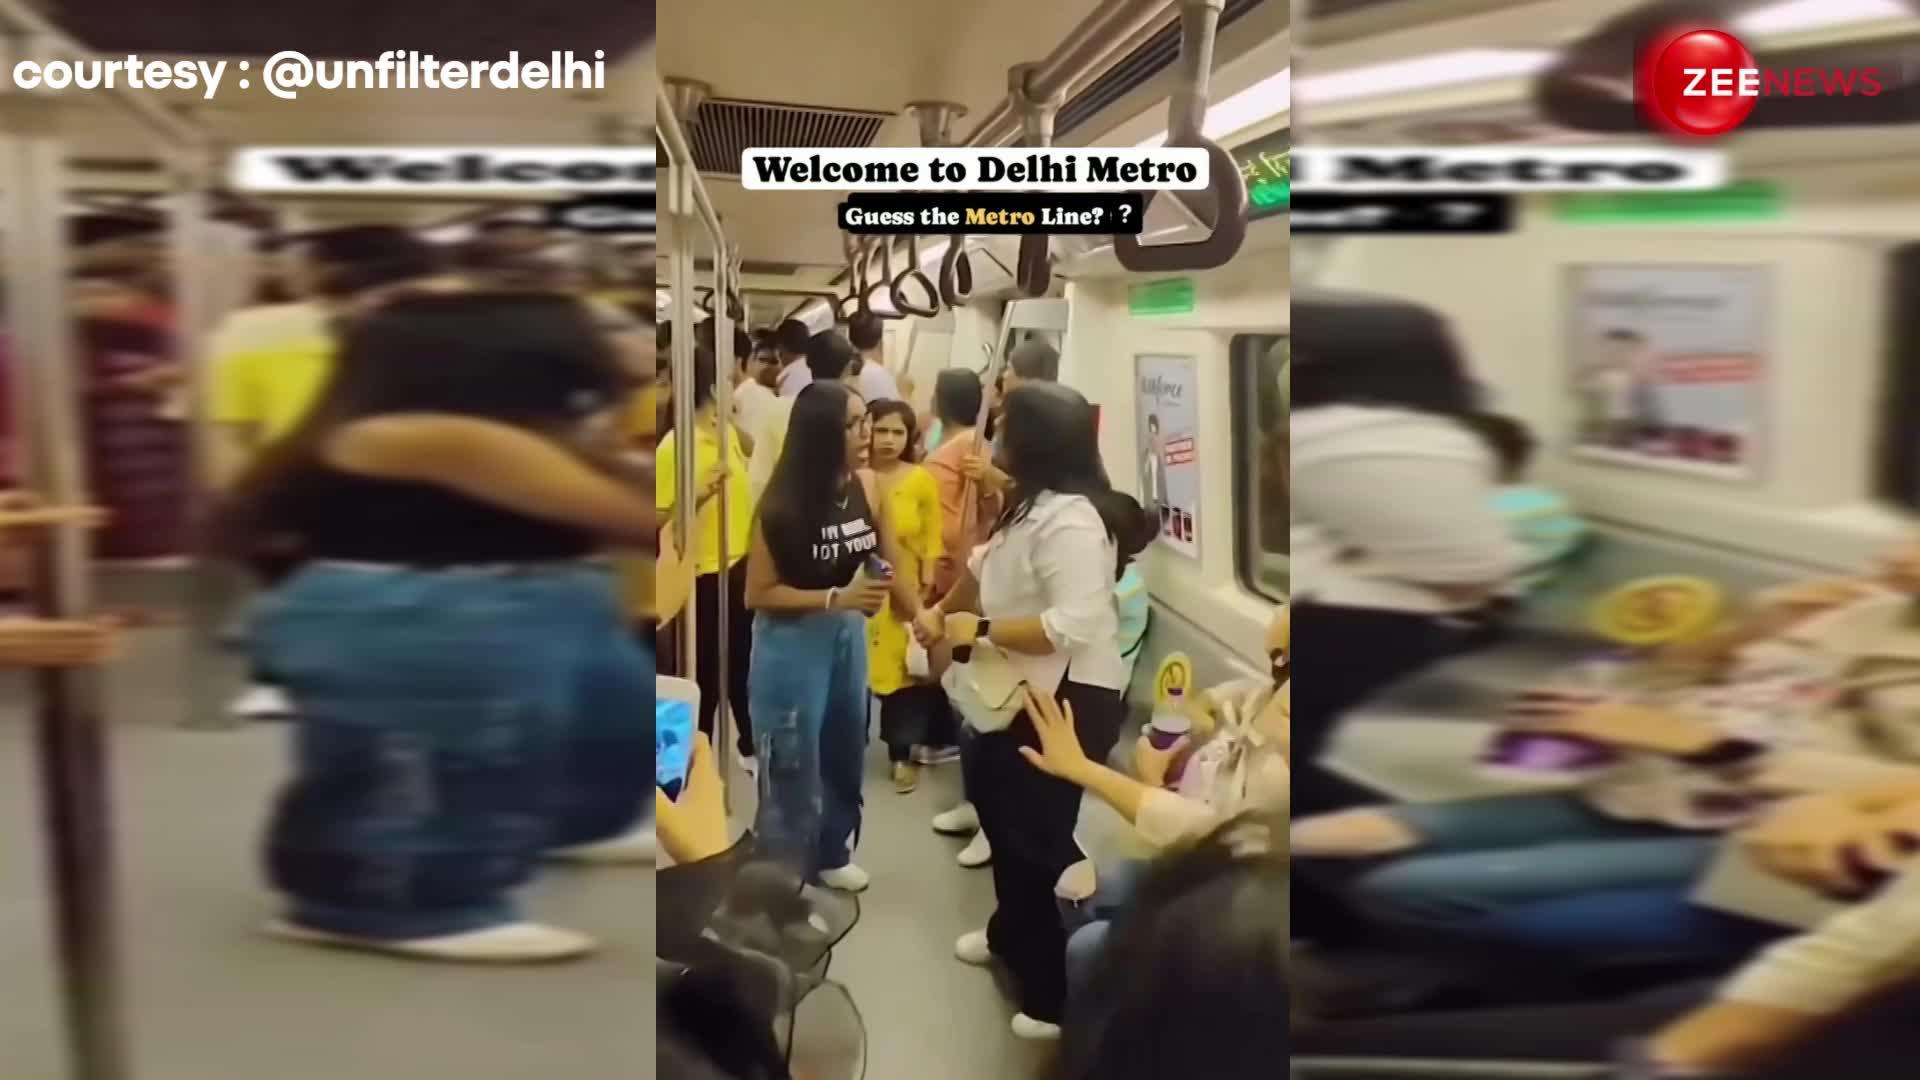 तू जानती नहीं मैं कौन हूं... फिर पापा की परी मेट्रो में भिड़ी, जमकर Delhi metro में चले लात-घूसे, देखें VIDEO